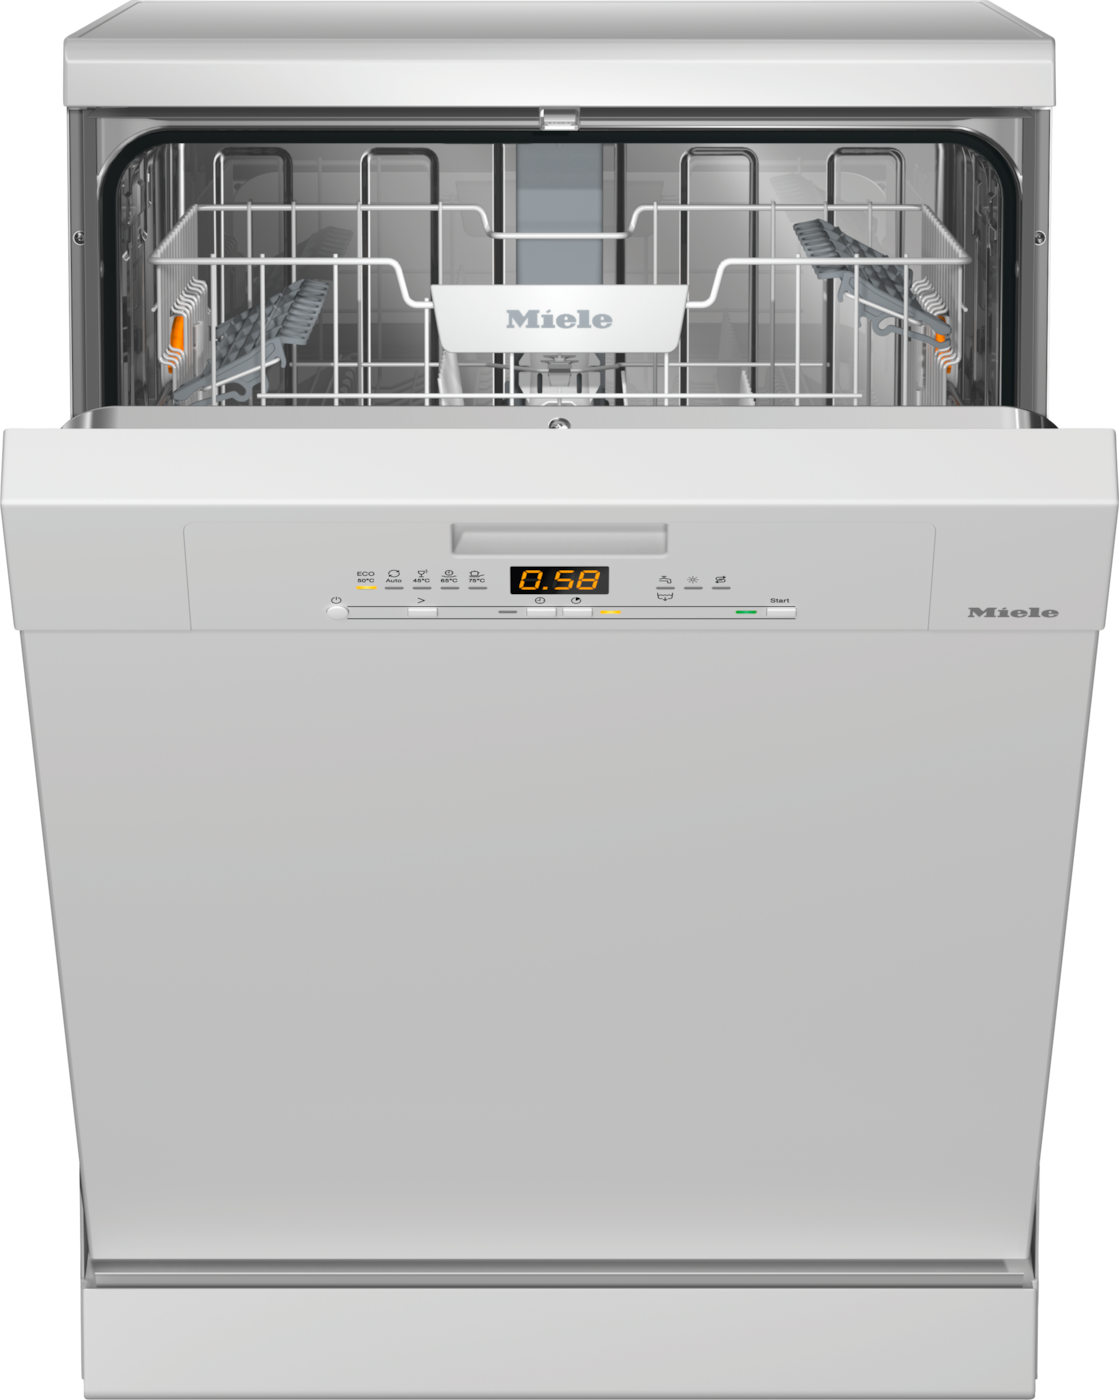 miele-dishwashers-g-5000-freestanding-dishwasher